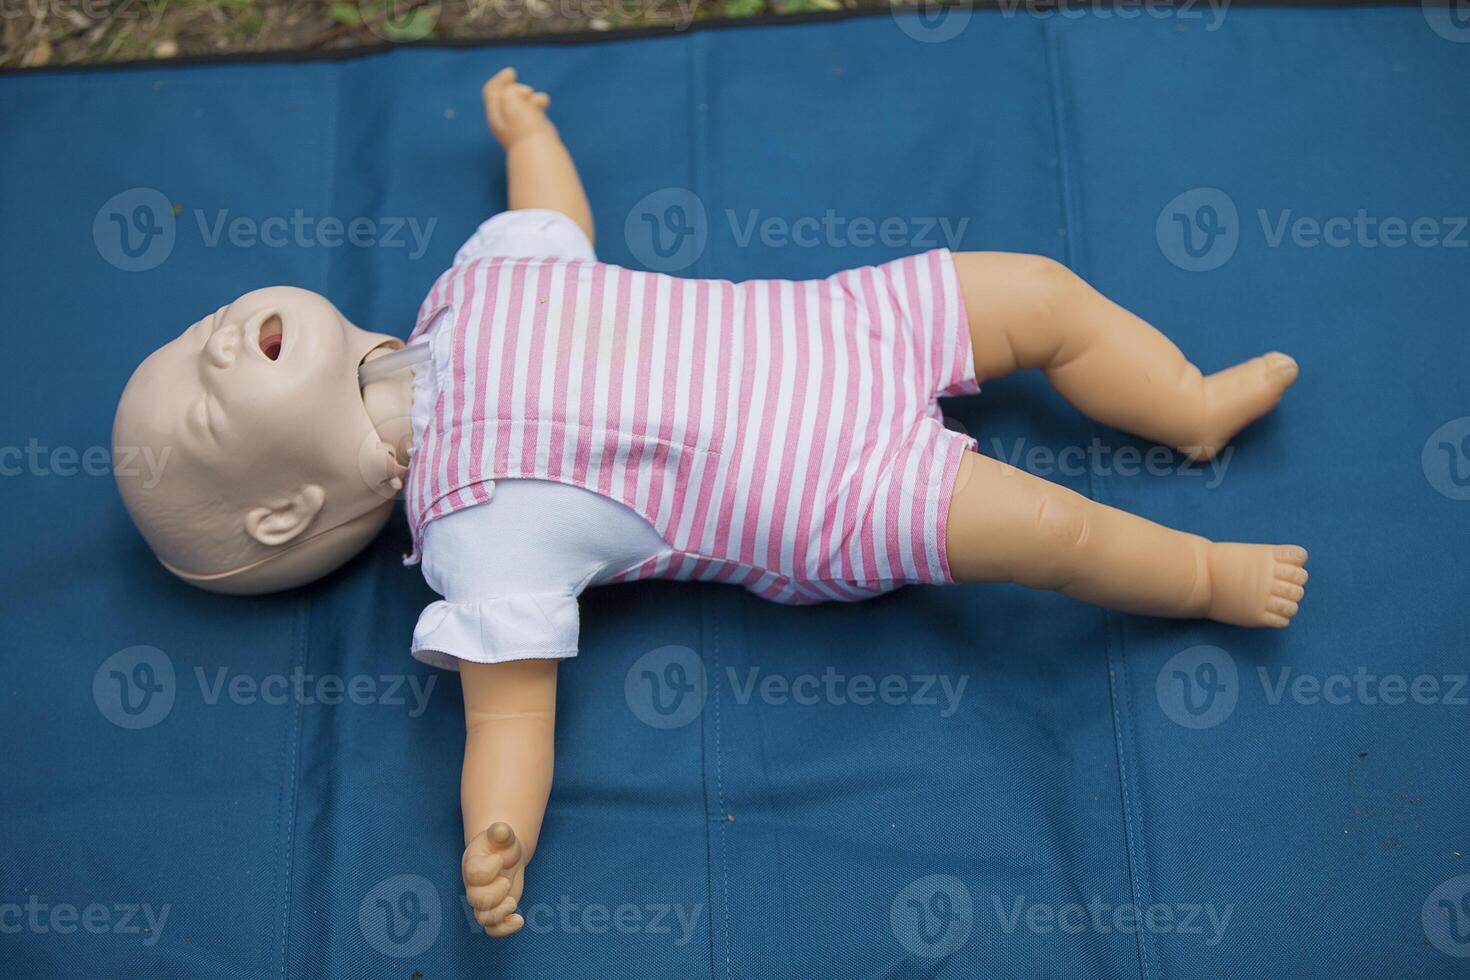 mannequin kind voor eerste steun opleiding. opleiding dummy kind voor beoefenen kunstmatig ademhaling foto